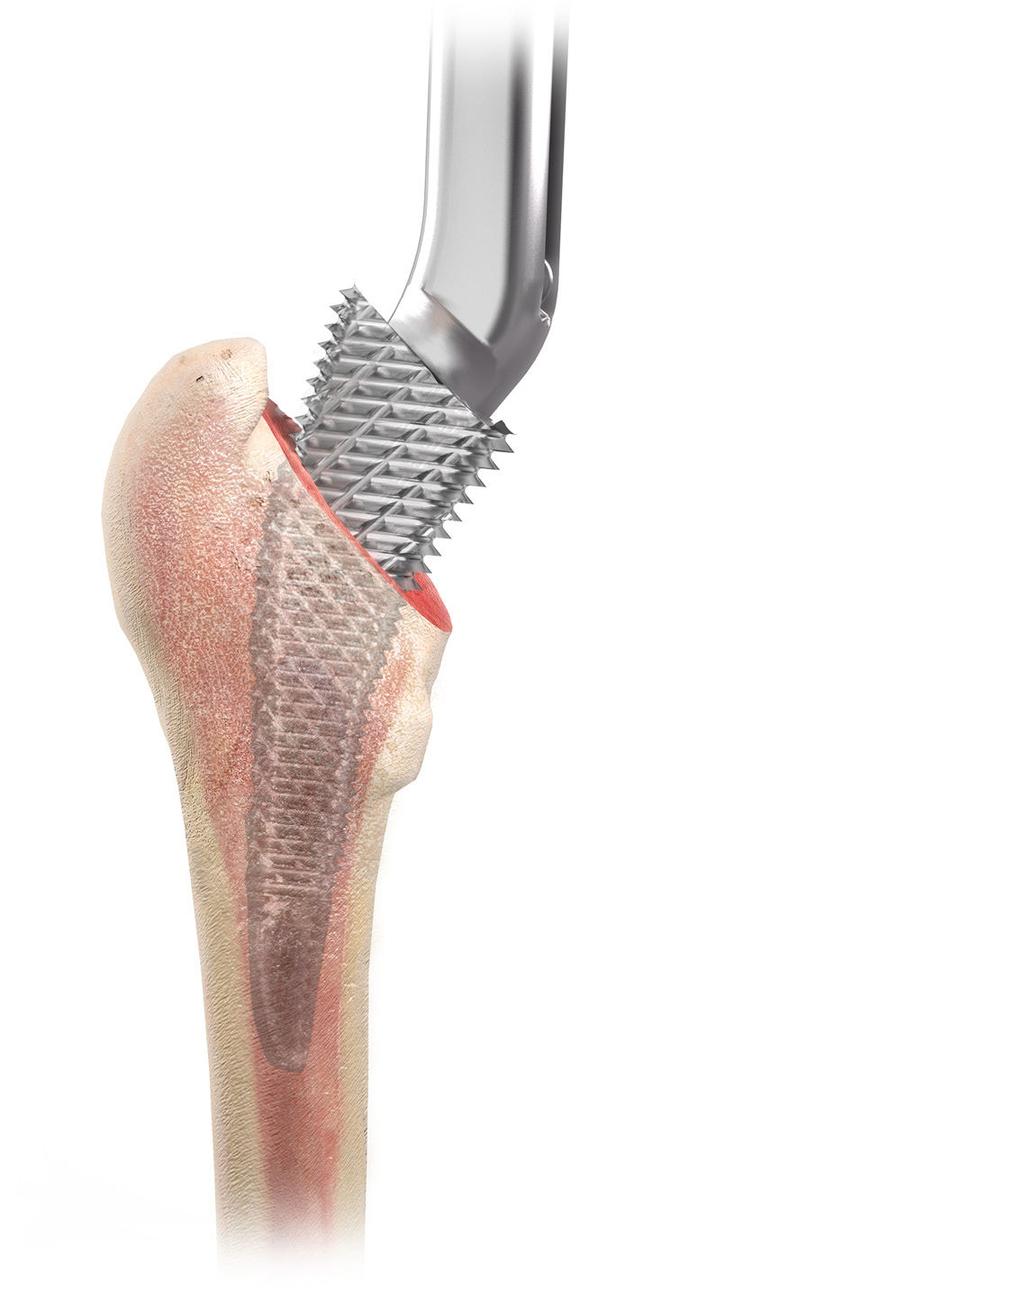 Preparazione del canale femorale Lo stelo TRI-LOCK a conservazione ossea offre diverse impugnature per broccia che consentono diversi approcci chirurgici per la protesizzazione dell'anca.